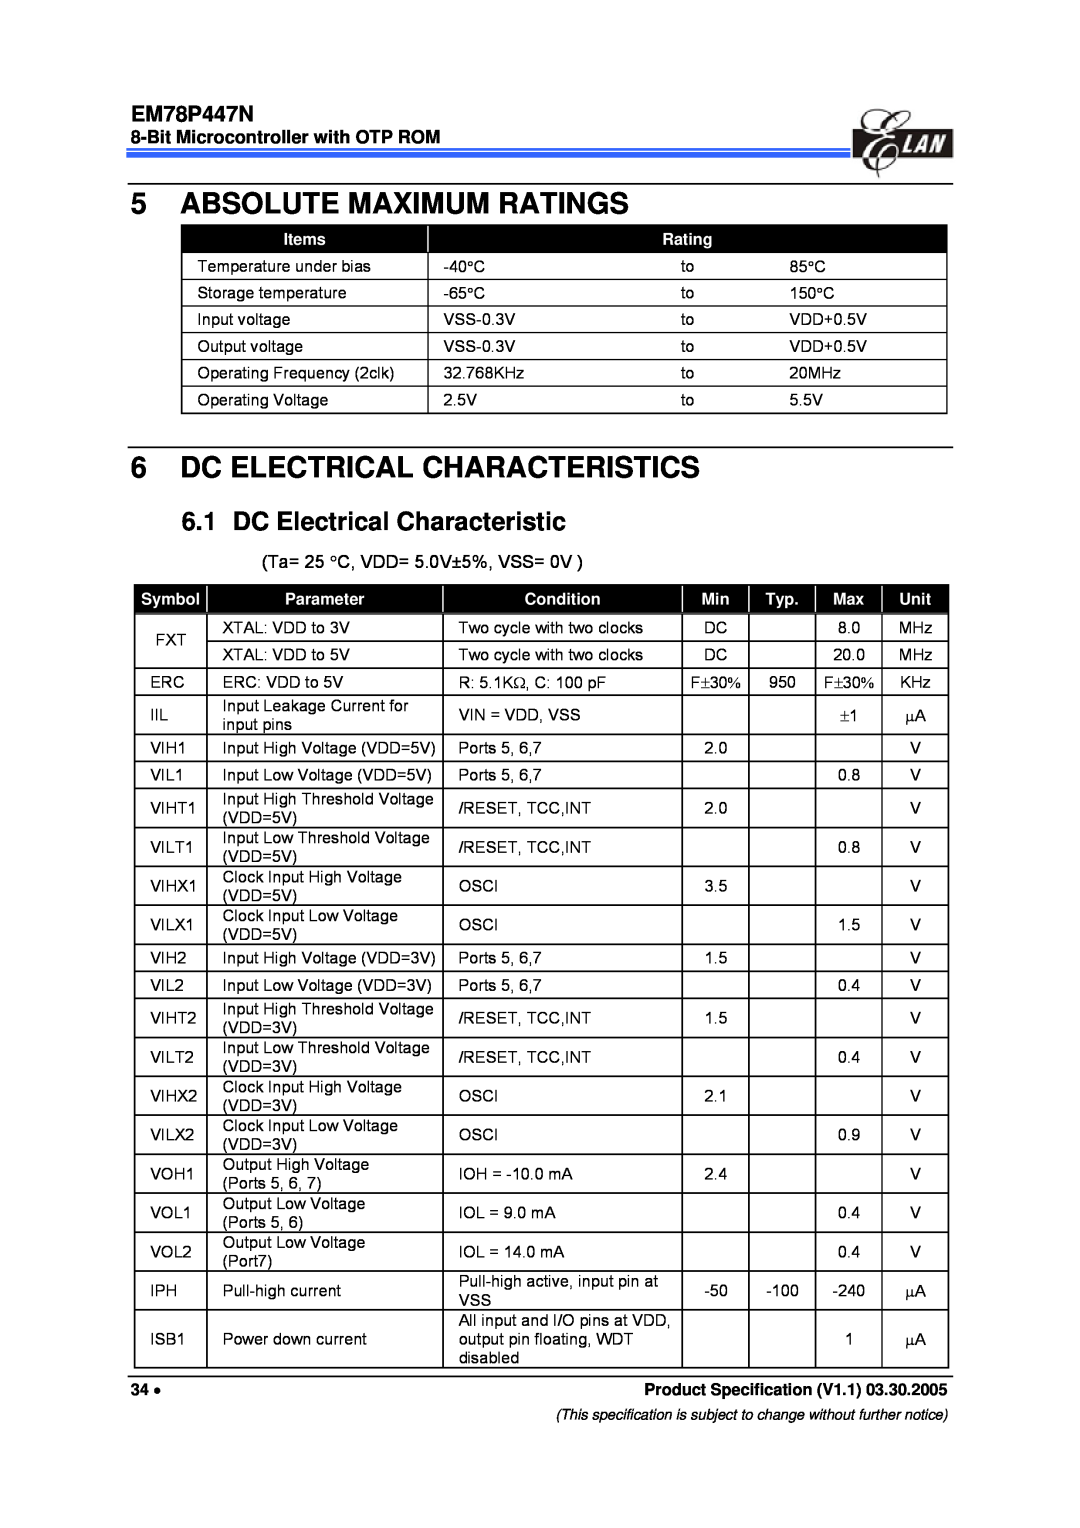 IBM EM78P447N manual Absolute Maximum Ratings, Dc Electrical Characteristics, DC Electrical Characteristic 